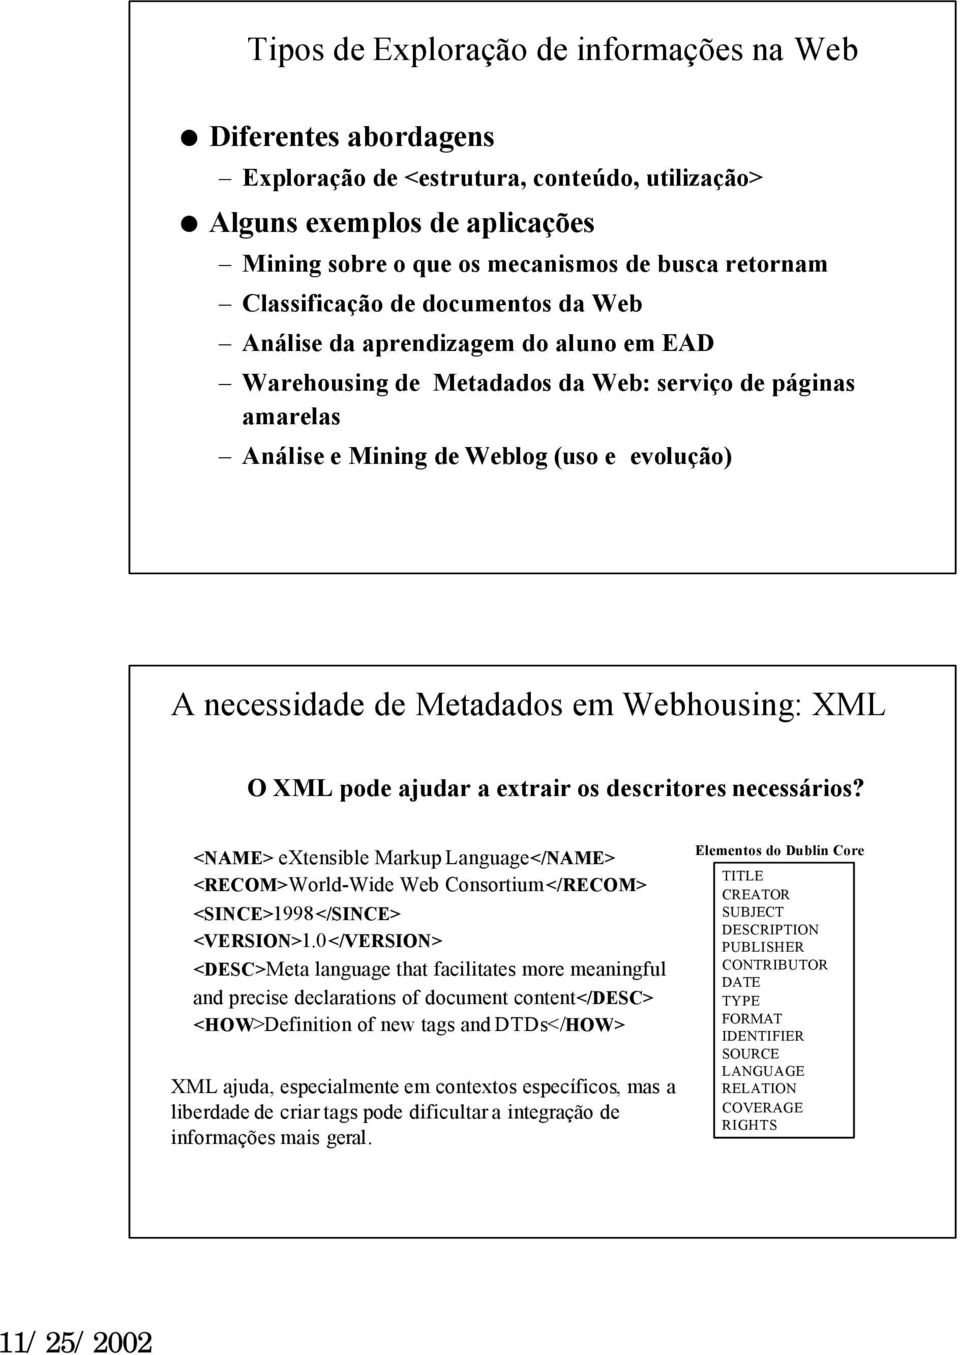 Metadados em Webhousing: XML O XML pode ajudar a extrair os descritores necessários? <NAME> extensible Markup Language</NAME> <RECOM>World-Wide Web Consortium</RECOM> <SINCE>1998</SINCE> <VERSION>1.